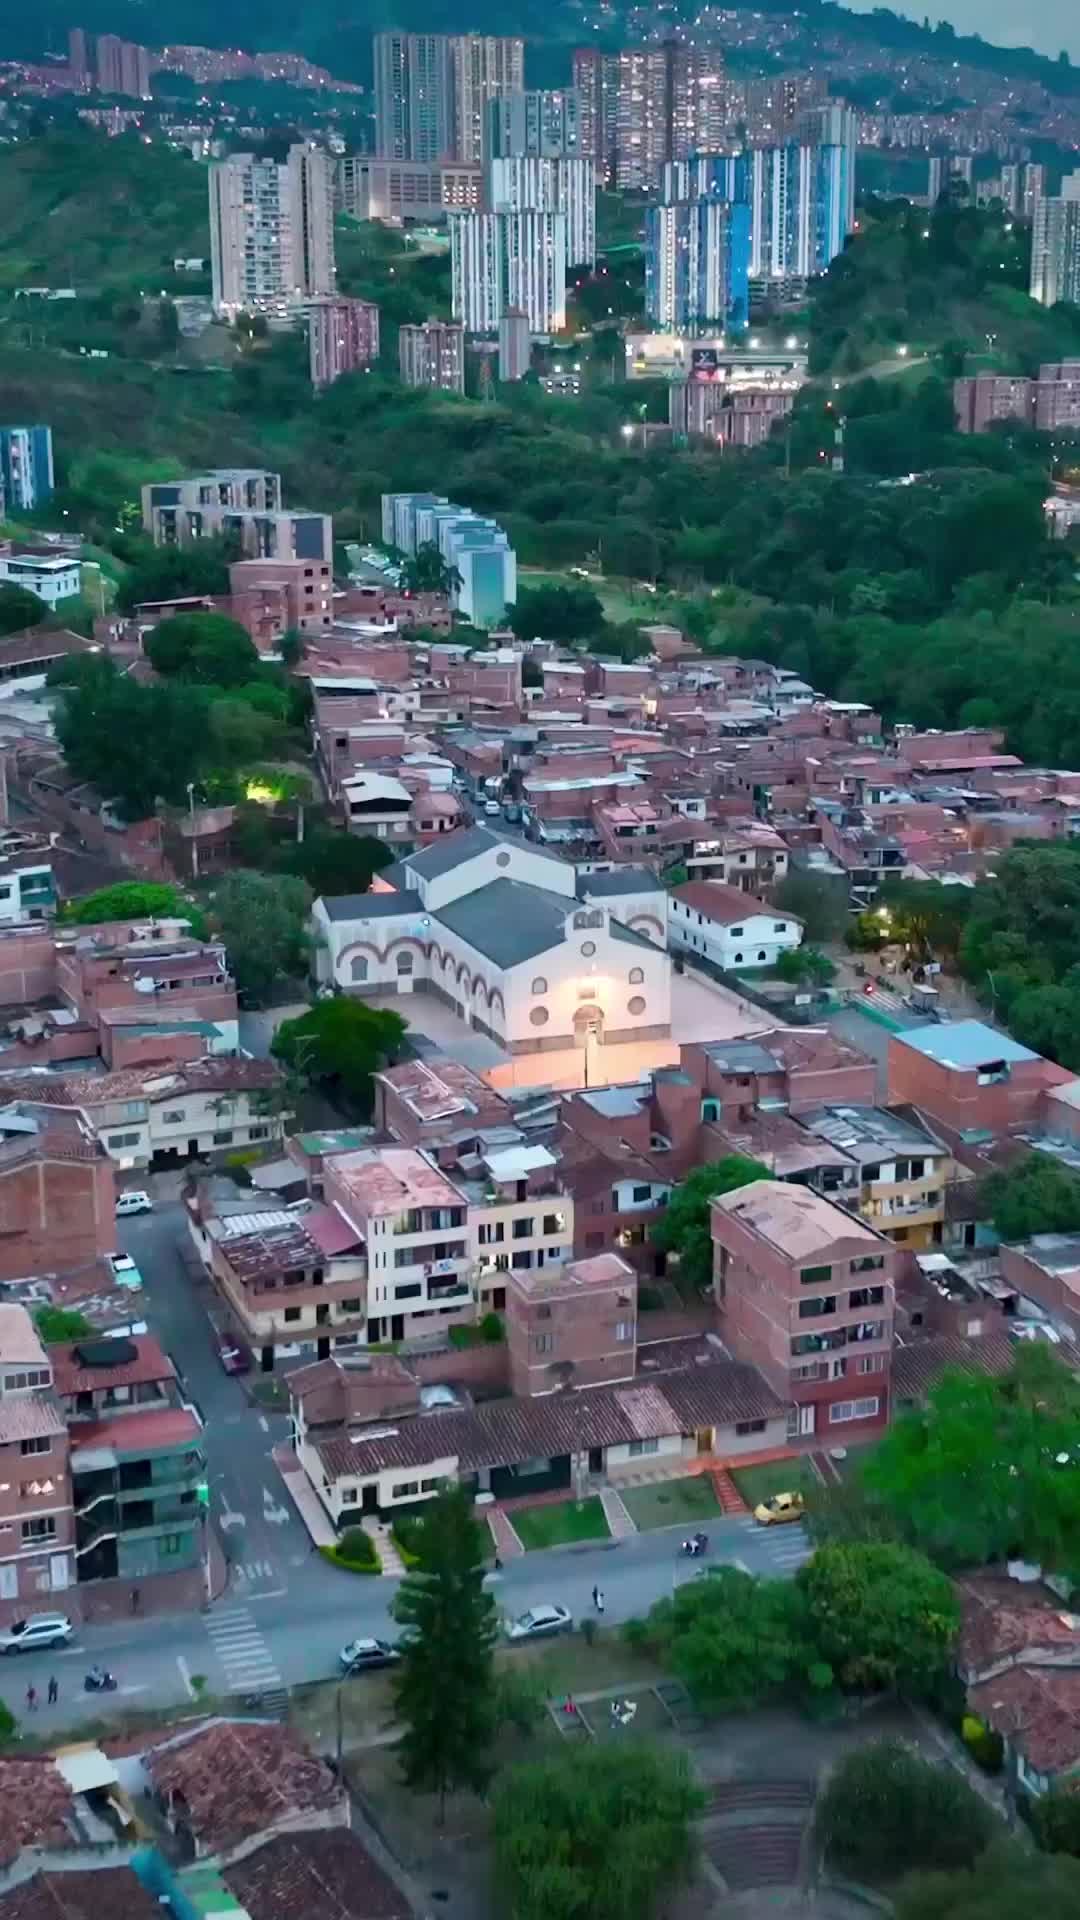 City Lights of Medellín: Stunning Night Skyline 🌃🇨🇴